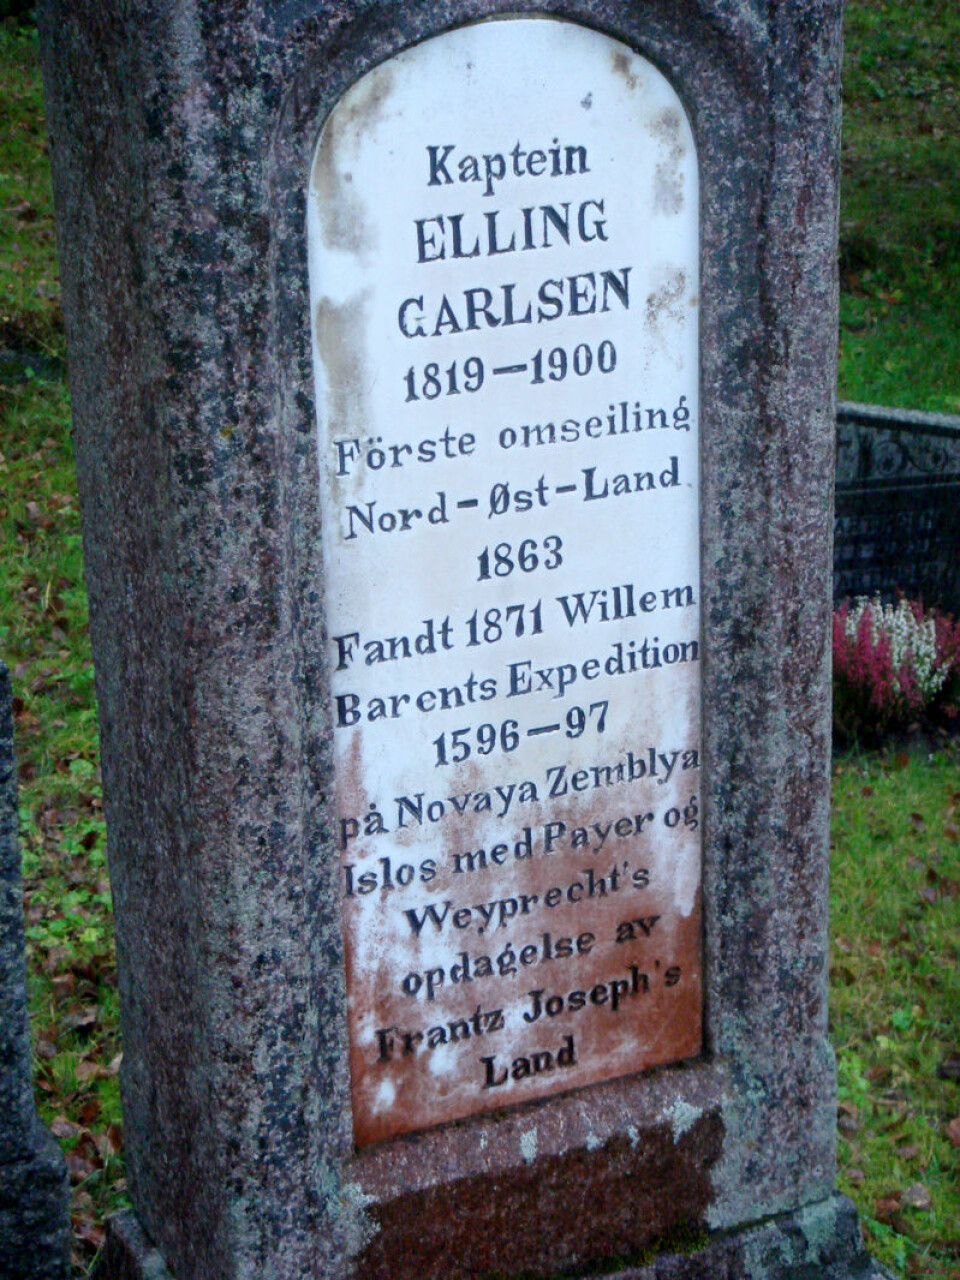 På gravsteinen i Tromsø står flere av bragdene som Elling Carlsen var med på som sjømann og ekspedisjonsmedlem. (Foto: Johan Schimanski)